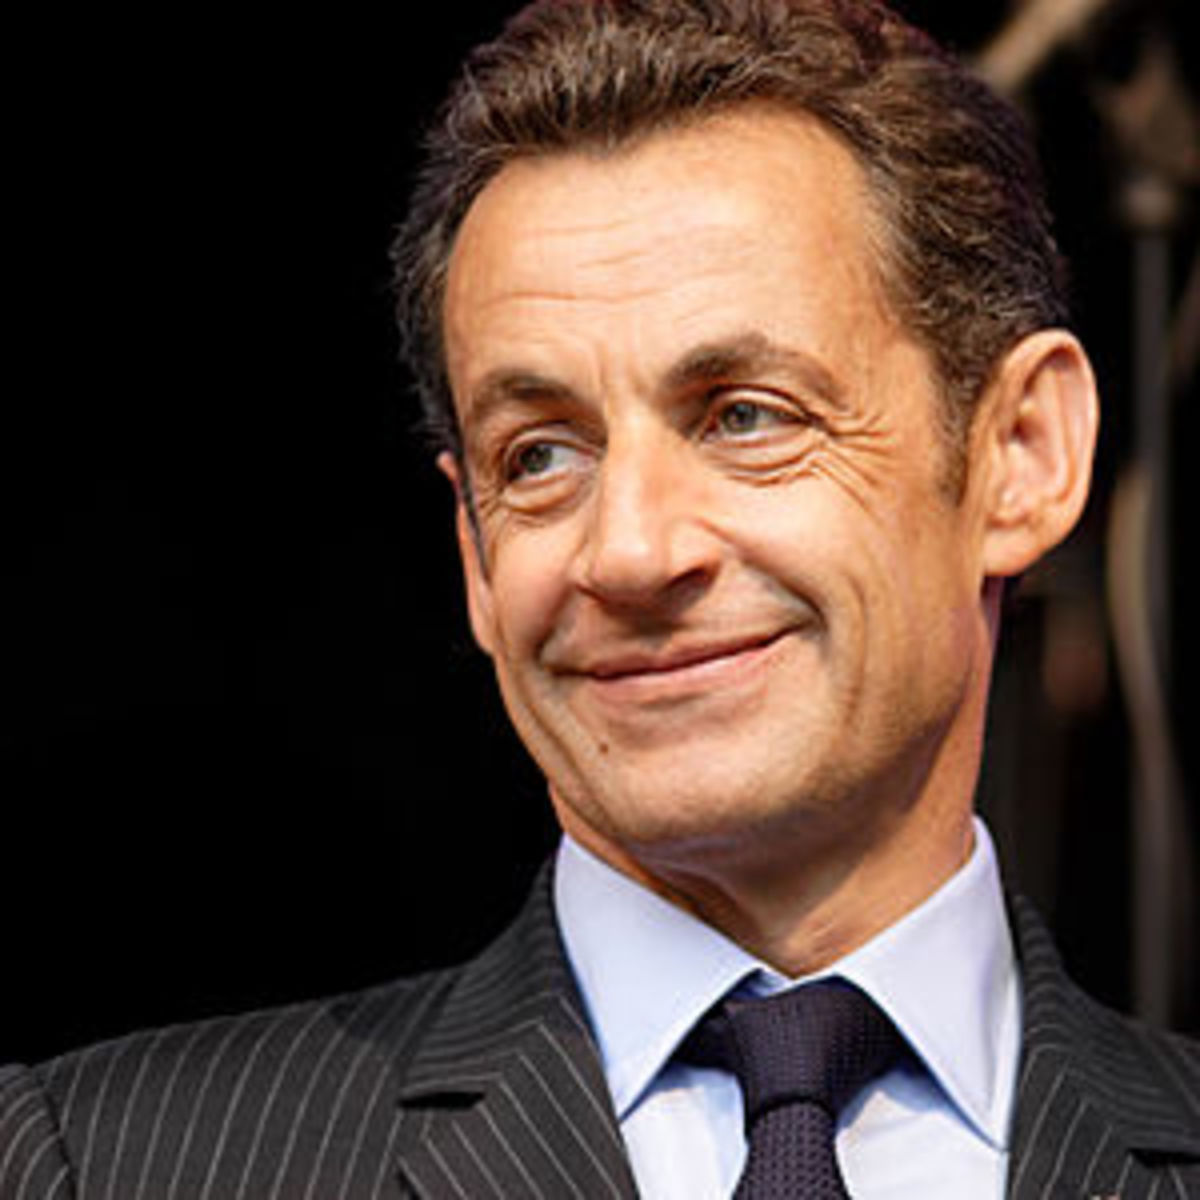 This image shows Nicolas Sarkozy who is presid...